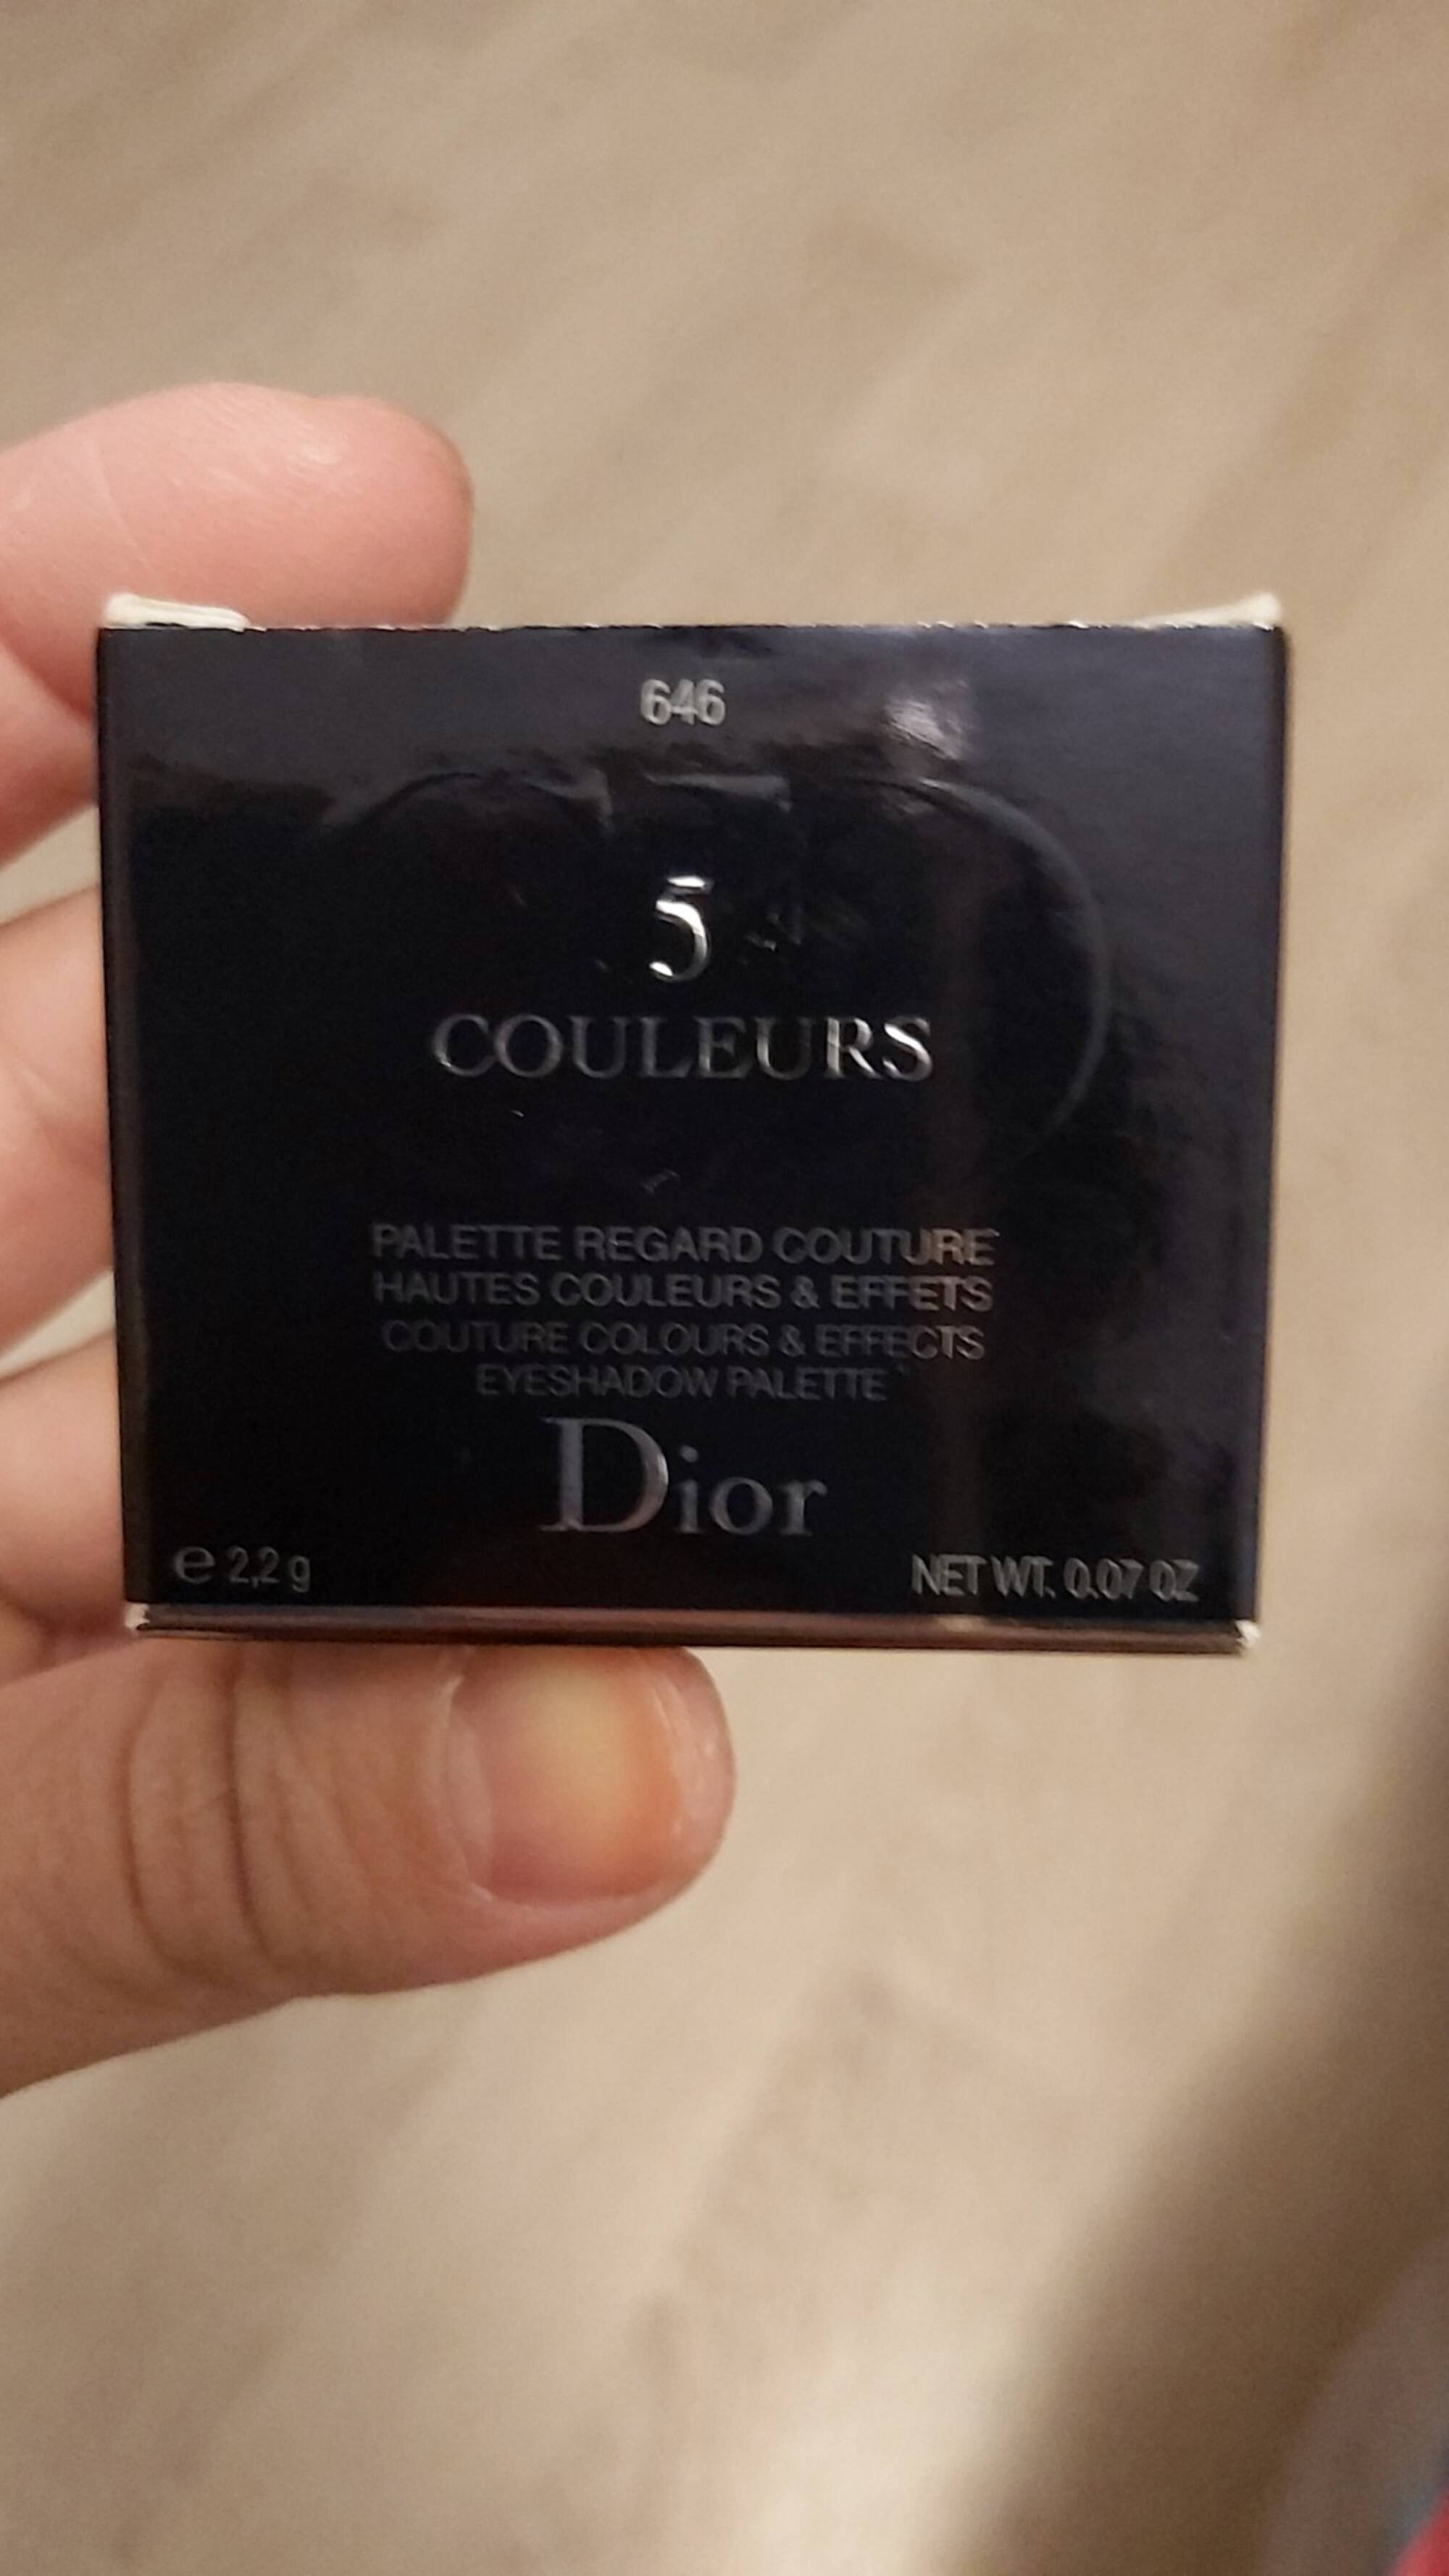 DIOR - 5 Couleurs - Palette regard couture